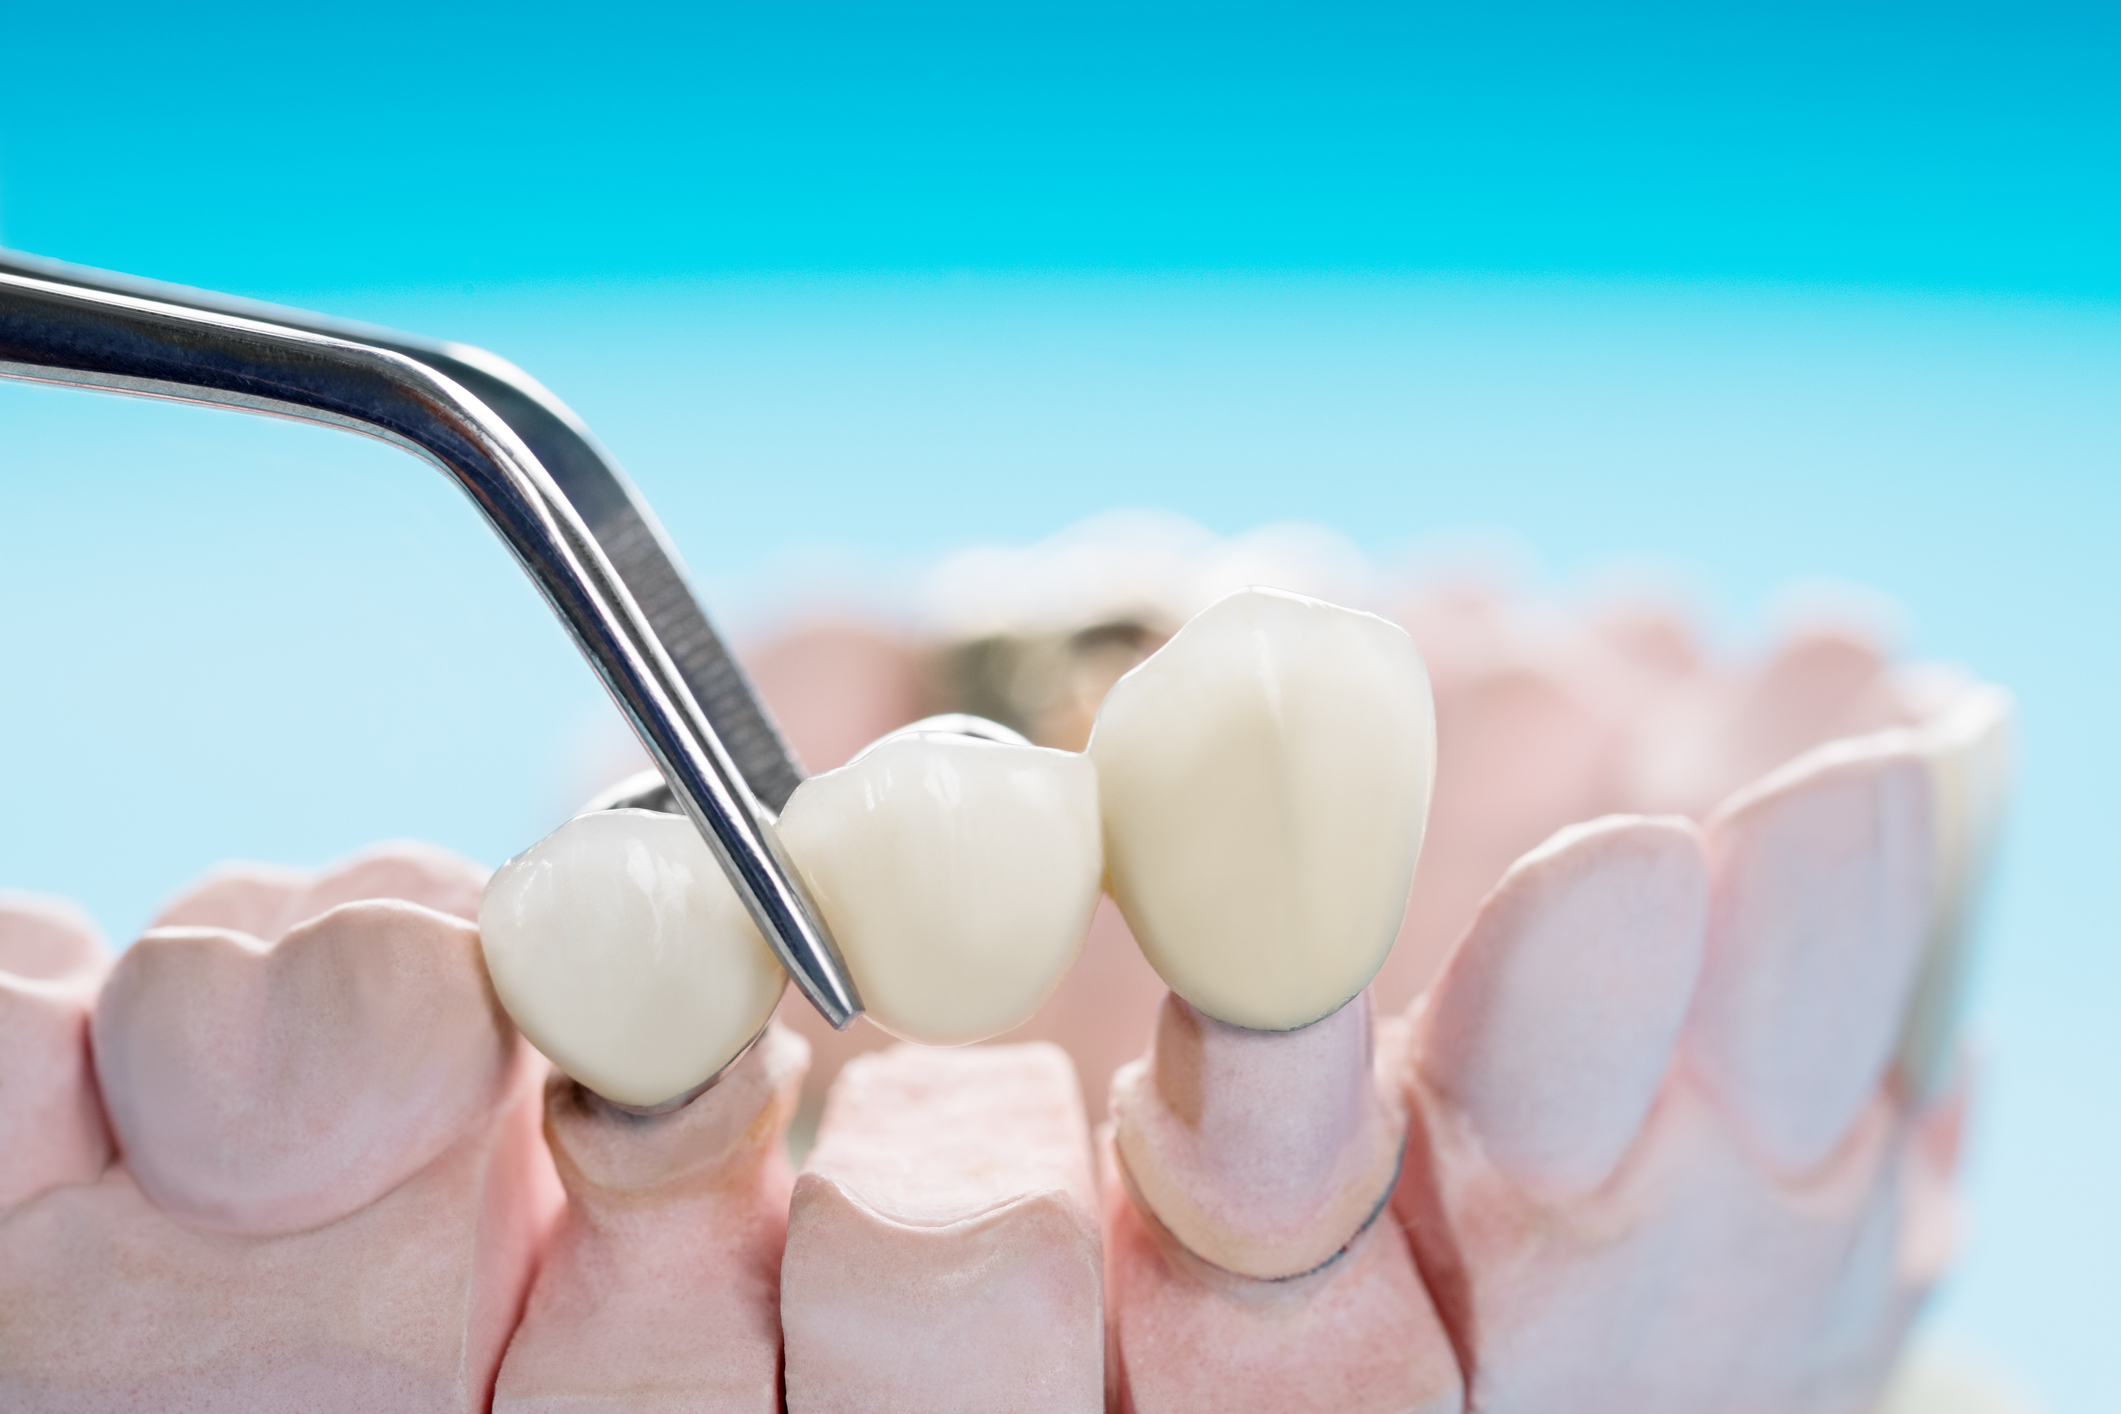 Appareil dentaire provisoire : dans quelles situations ?